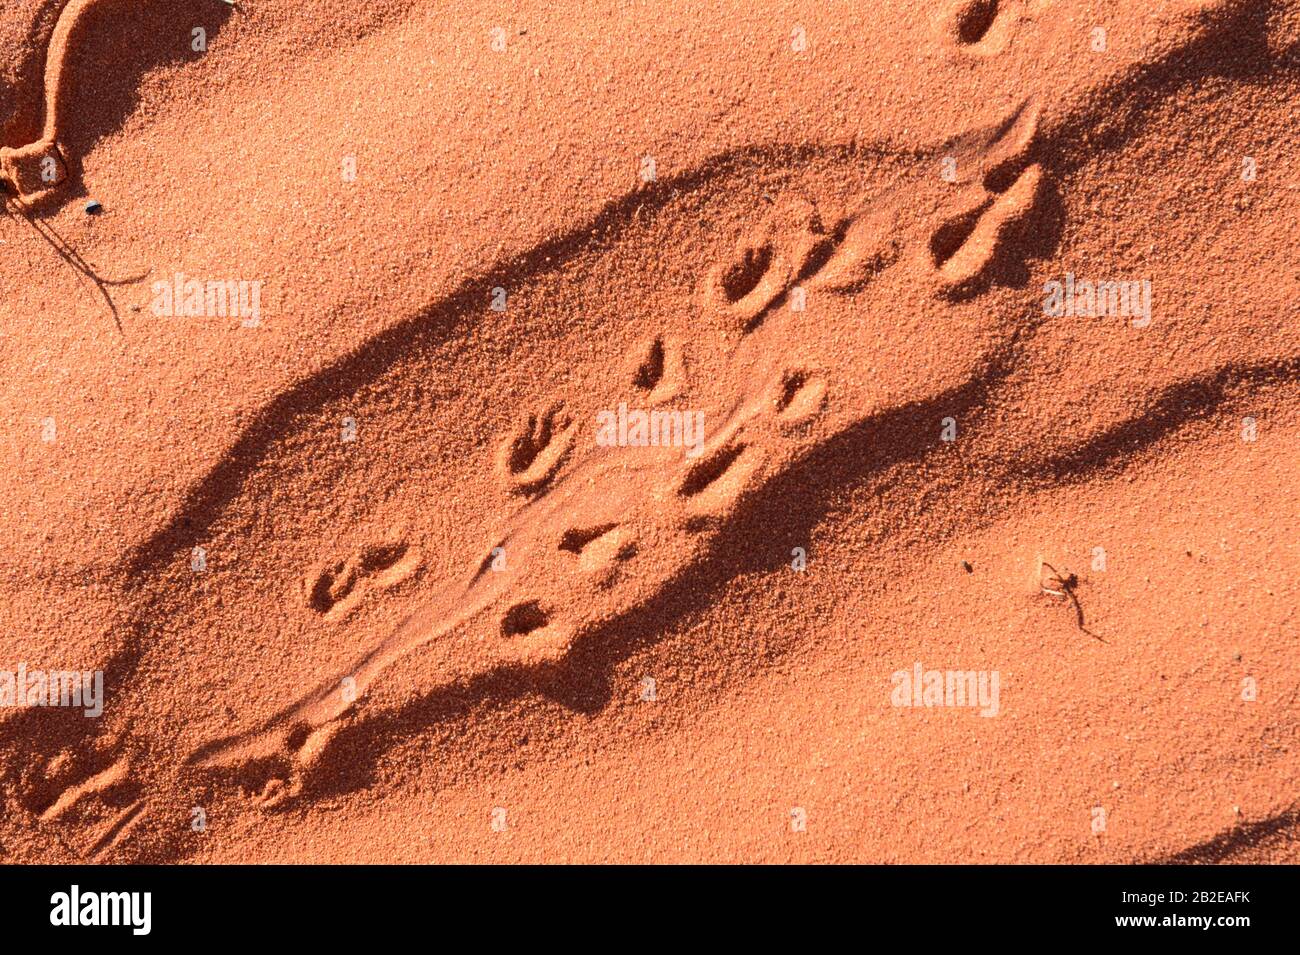 Animaux dans le sable rouge de l'Outback australien, au sud d'Alice Springs, territoire du Nord, territoire du Nord, Australie Banque D'Images